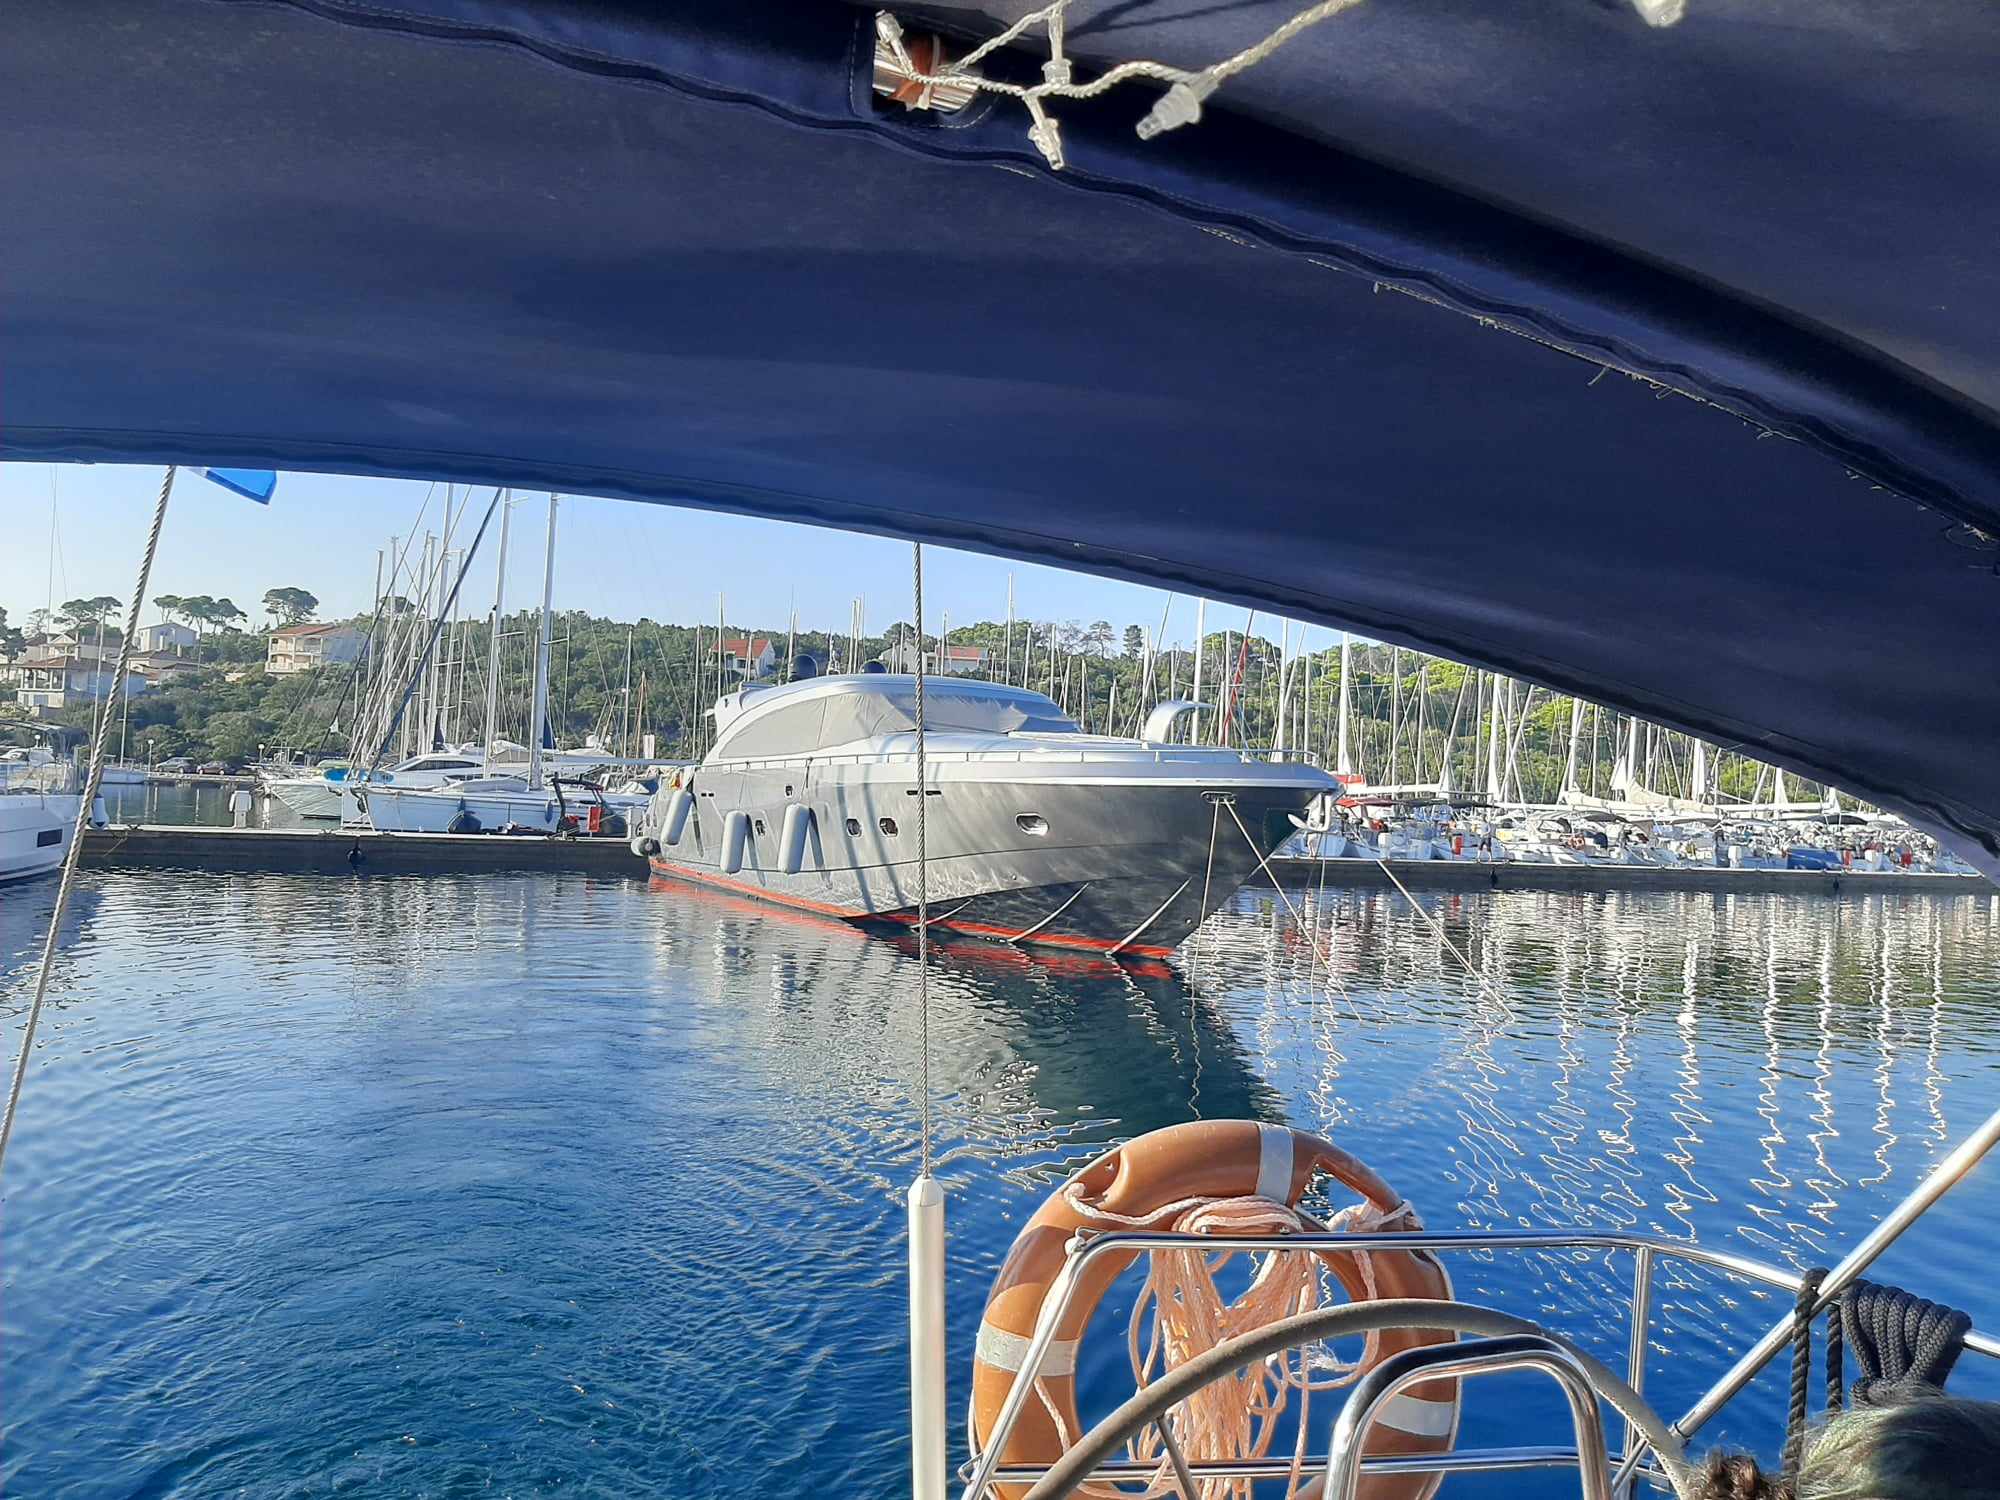 Élménygyűjtő nyaralás vitorláshajóval az Adrián - Kötélhajó Sétavitorlázás és Oktatás